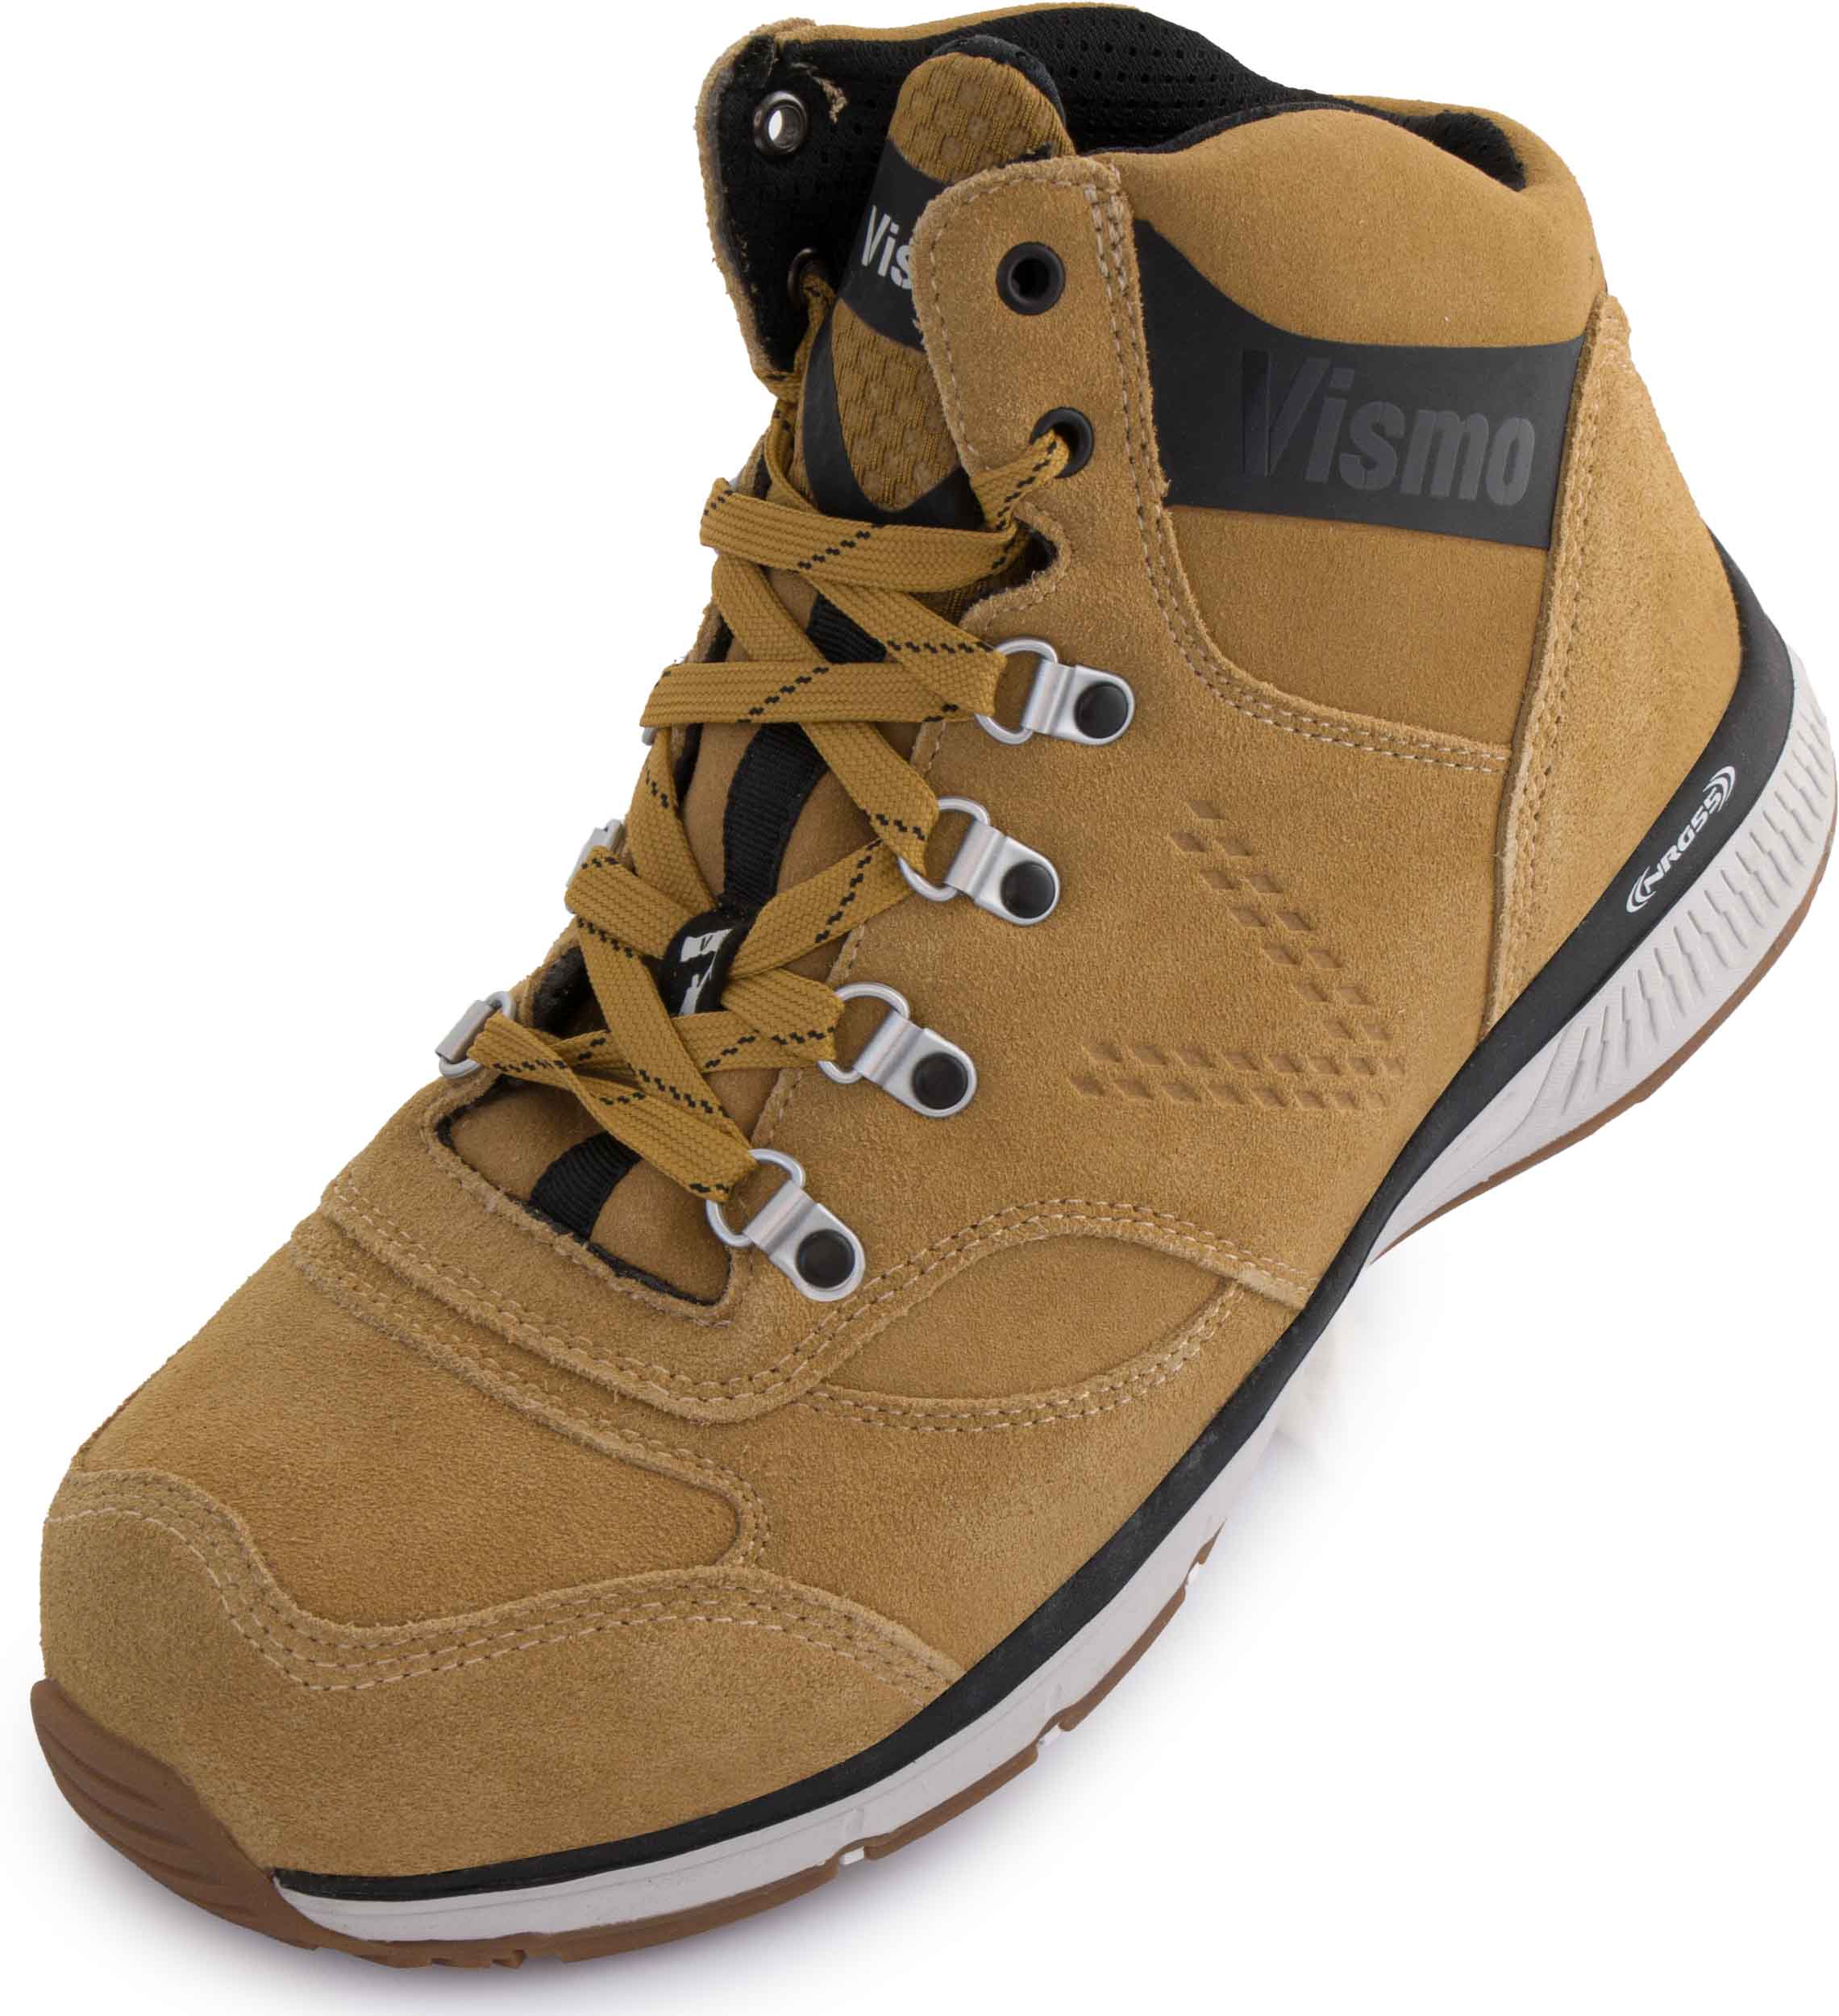 Bezpečnostní obuv Vismo safety boots S3|48